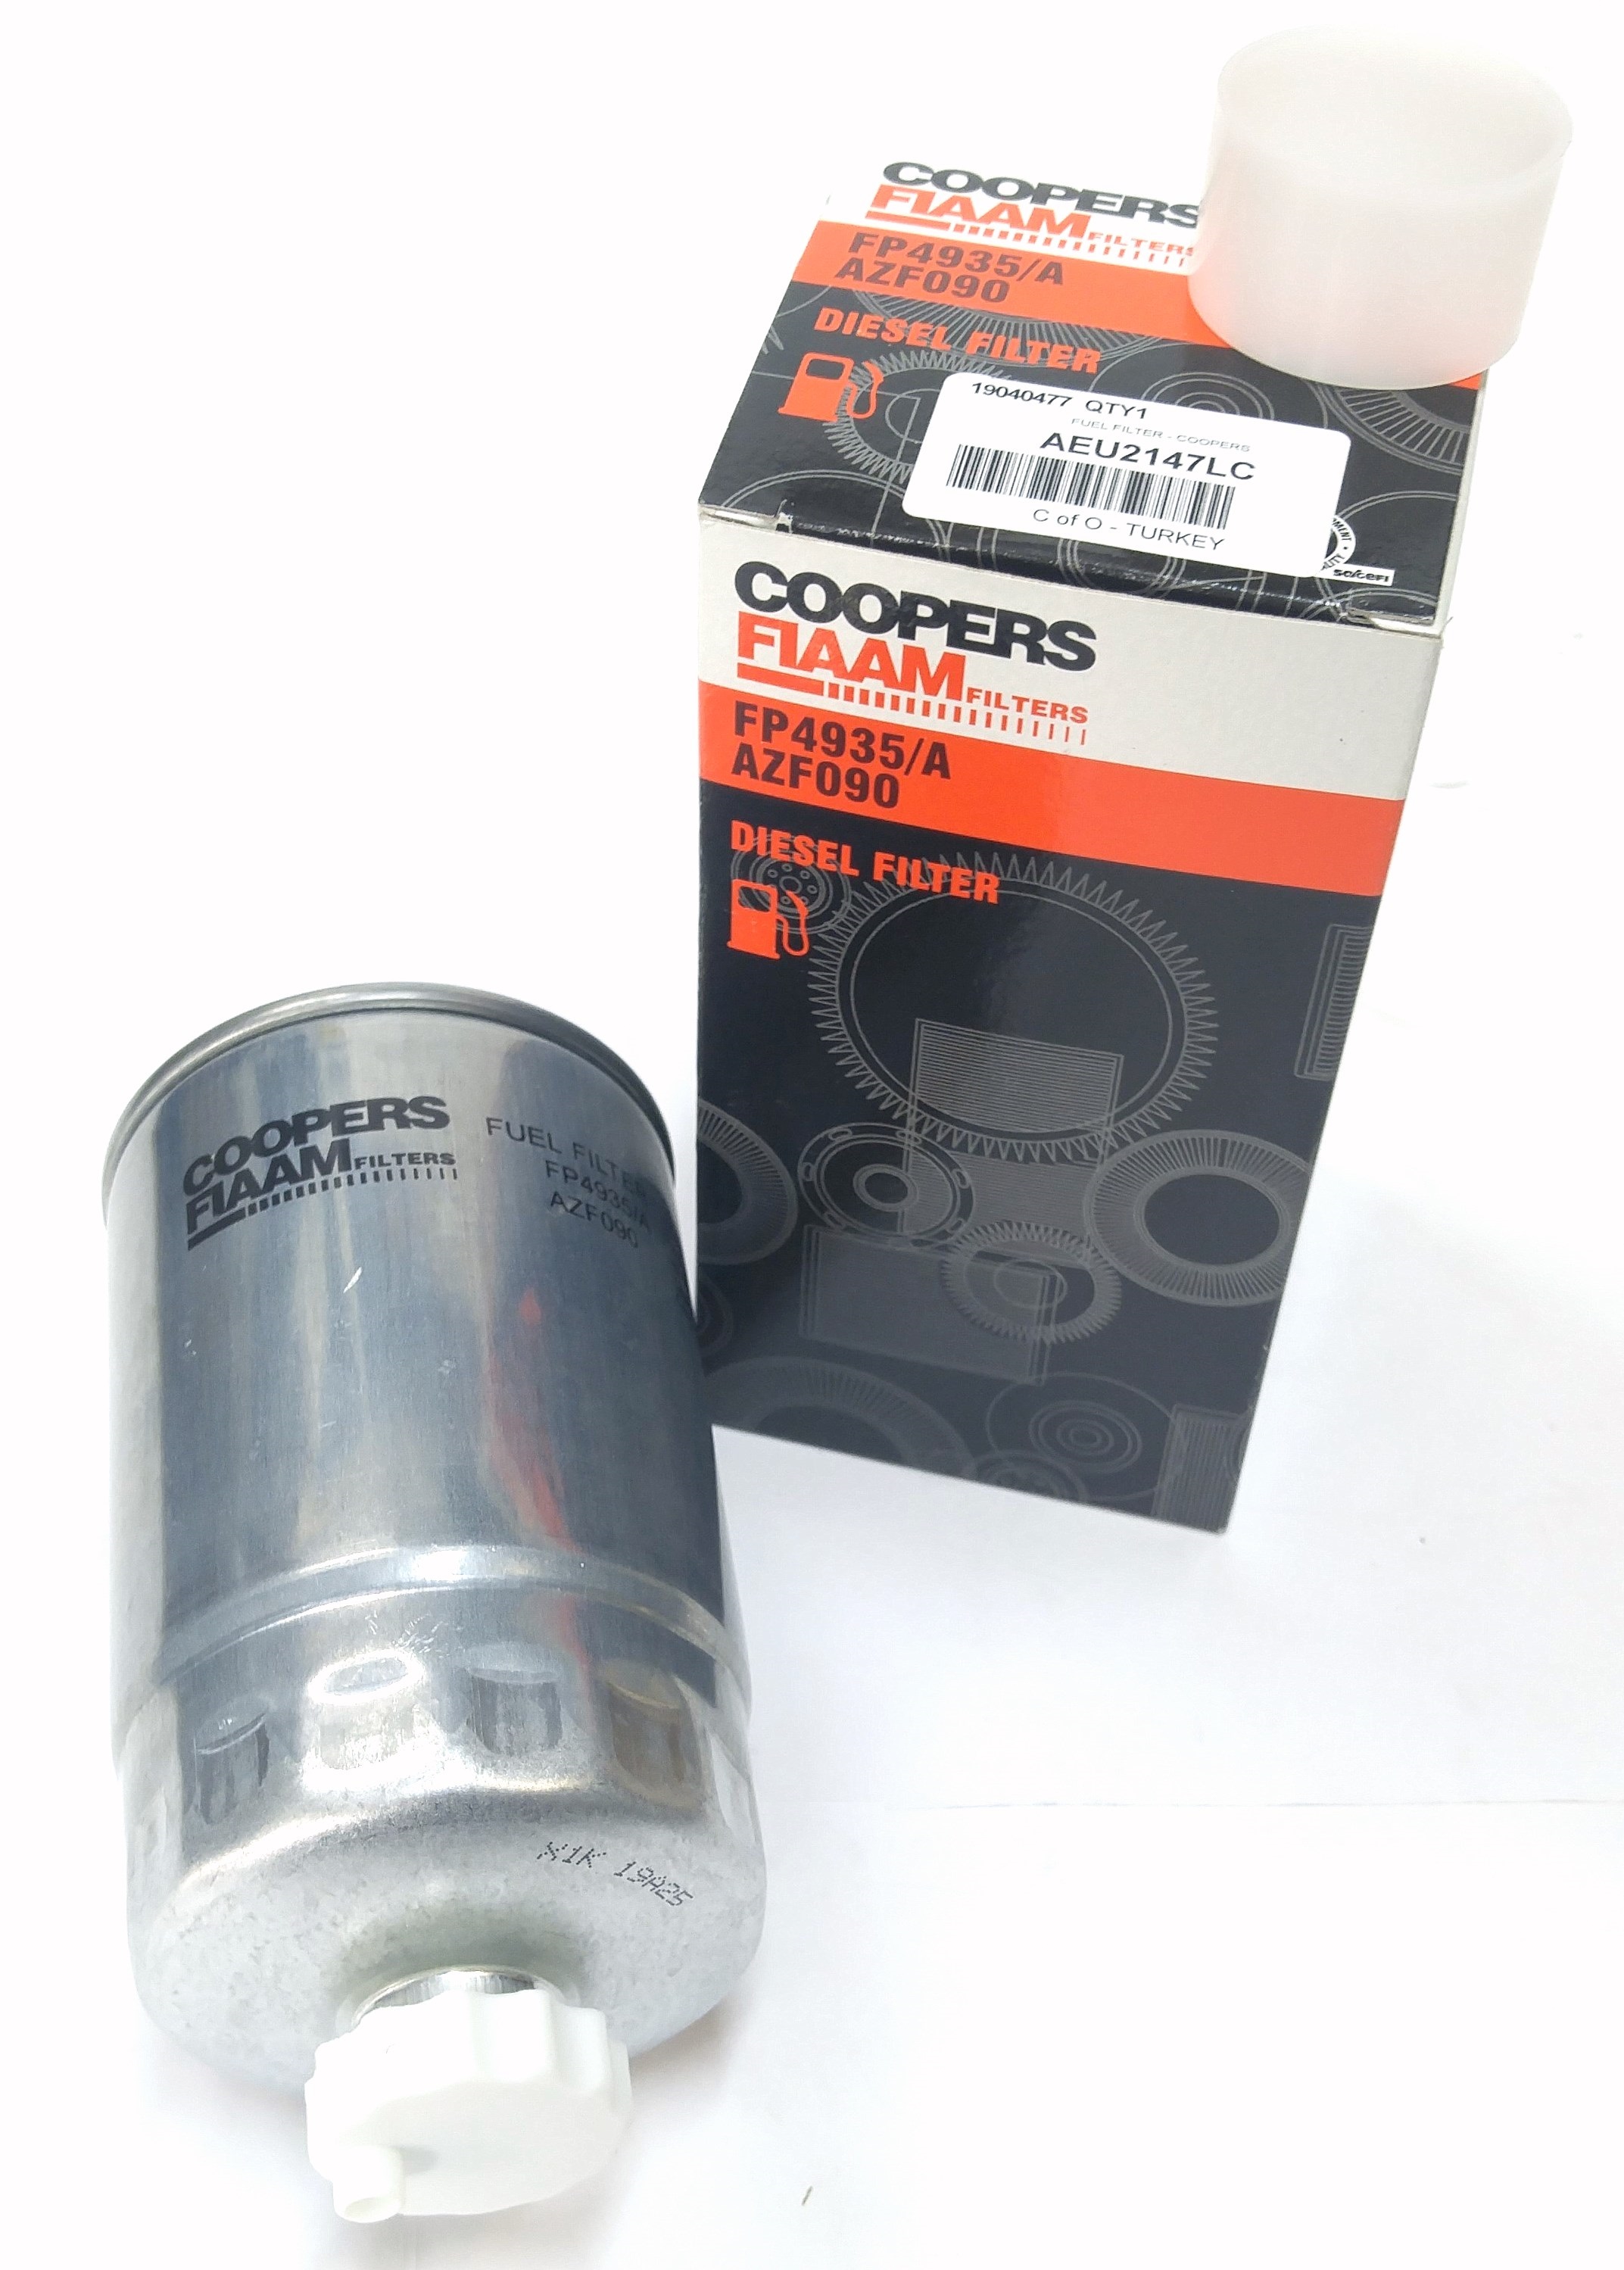 Фильтр топливный 300TD (AEU2147L||CoopersFiaam)